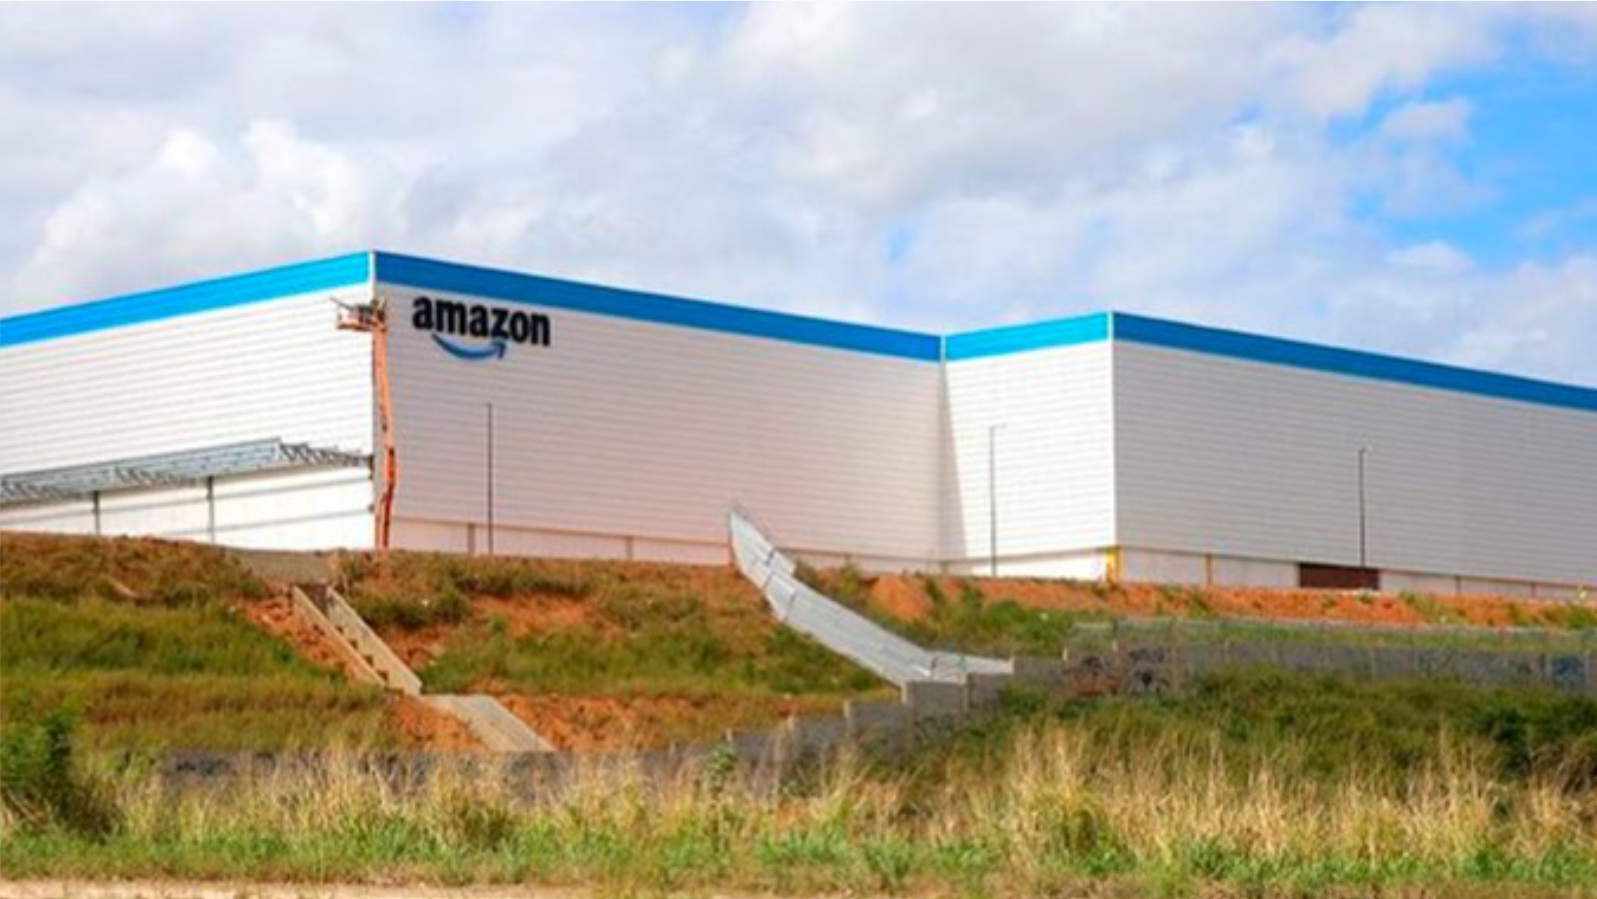 Ciamon_fachada do galpão Amazon_Fortaleza